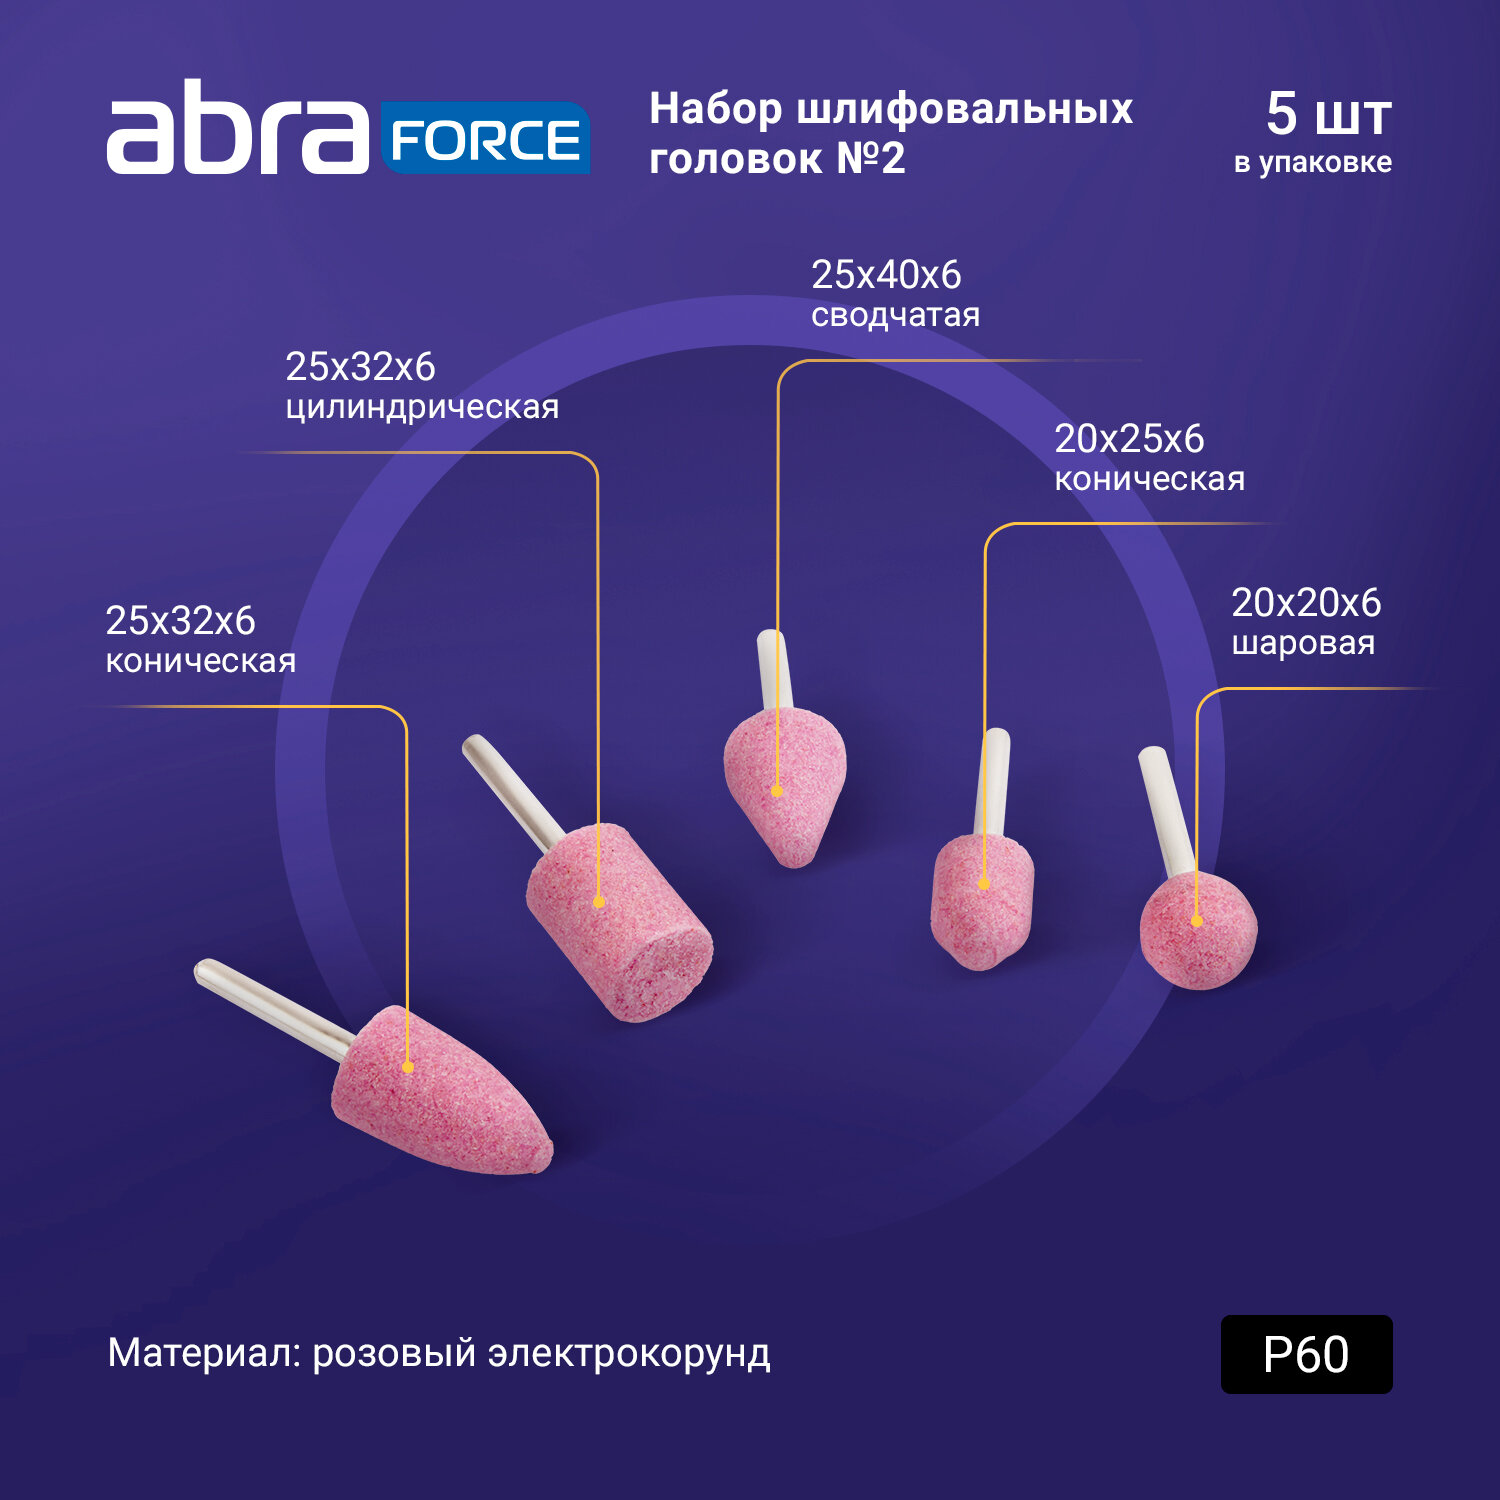 Набор шлифовальных головок № 2 ABRAforce ( розовый электрокорунд P60, 5 штук )